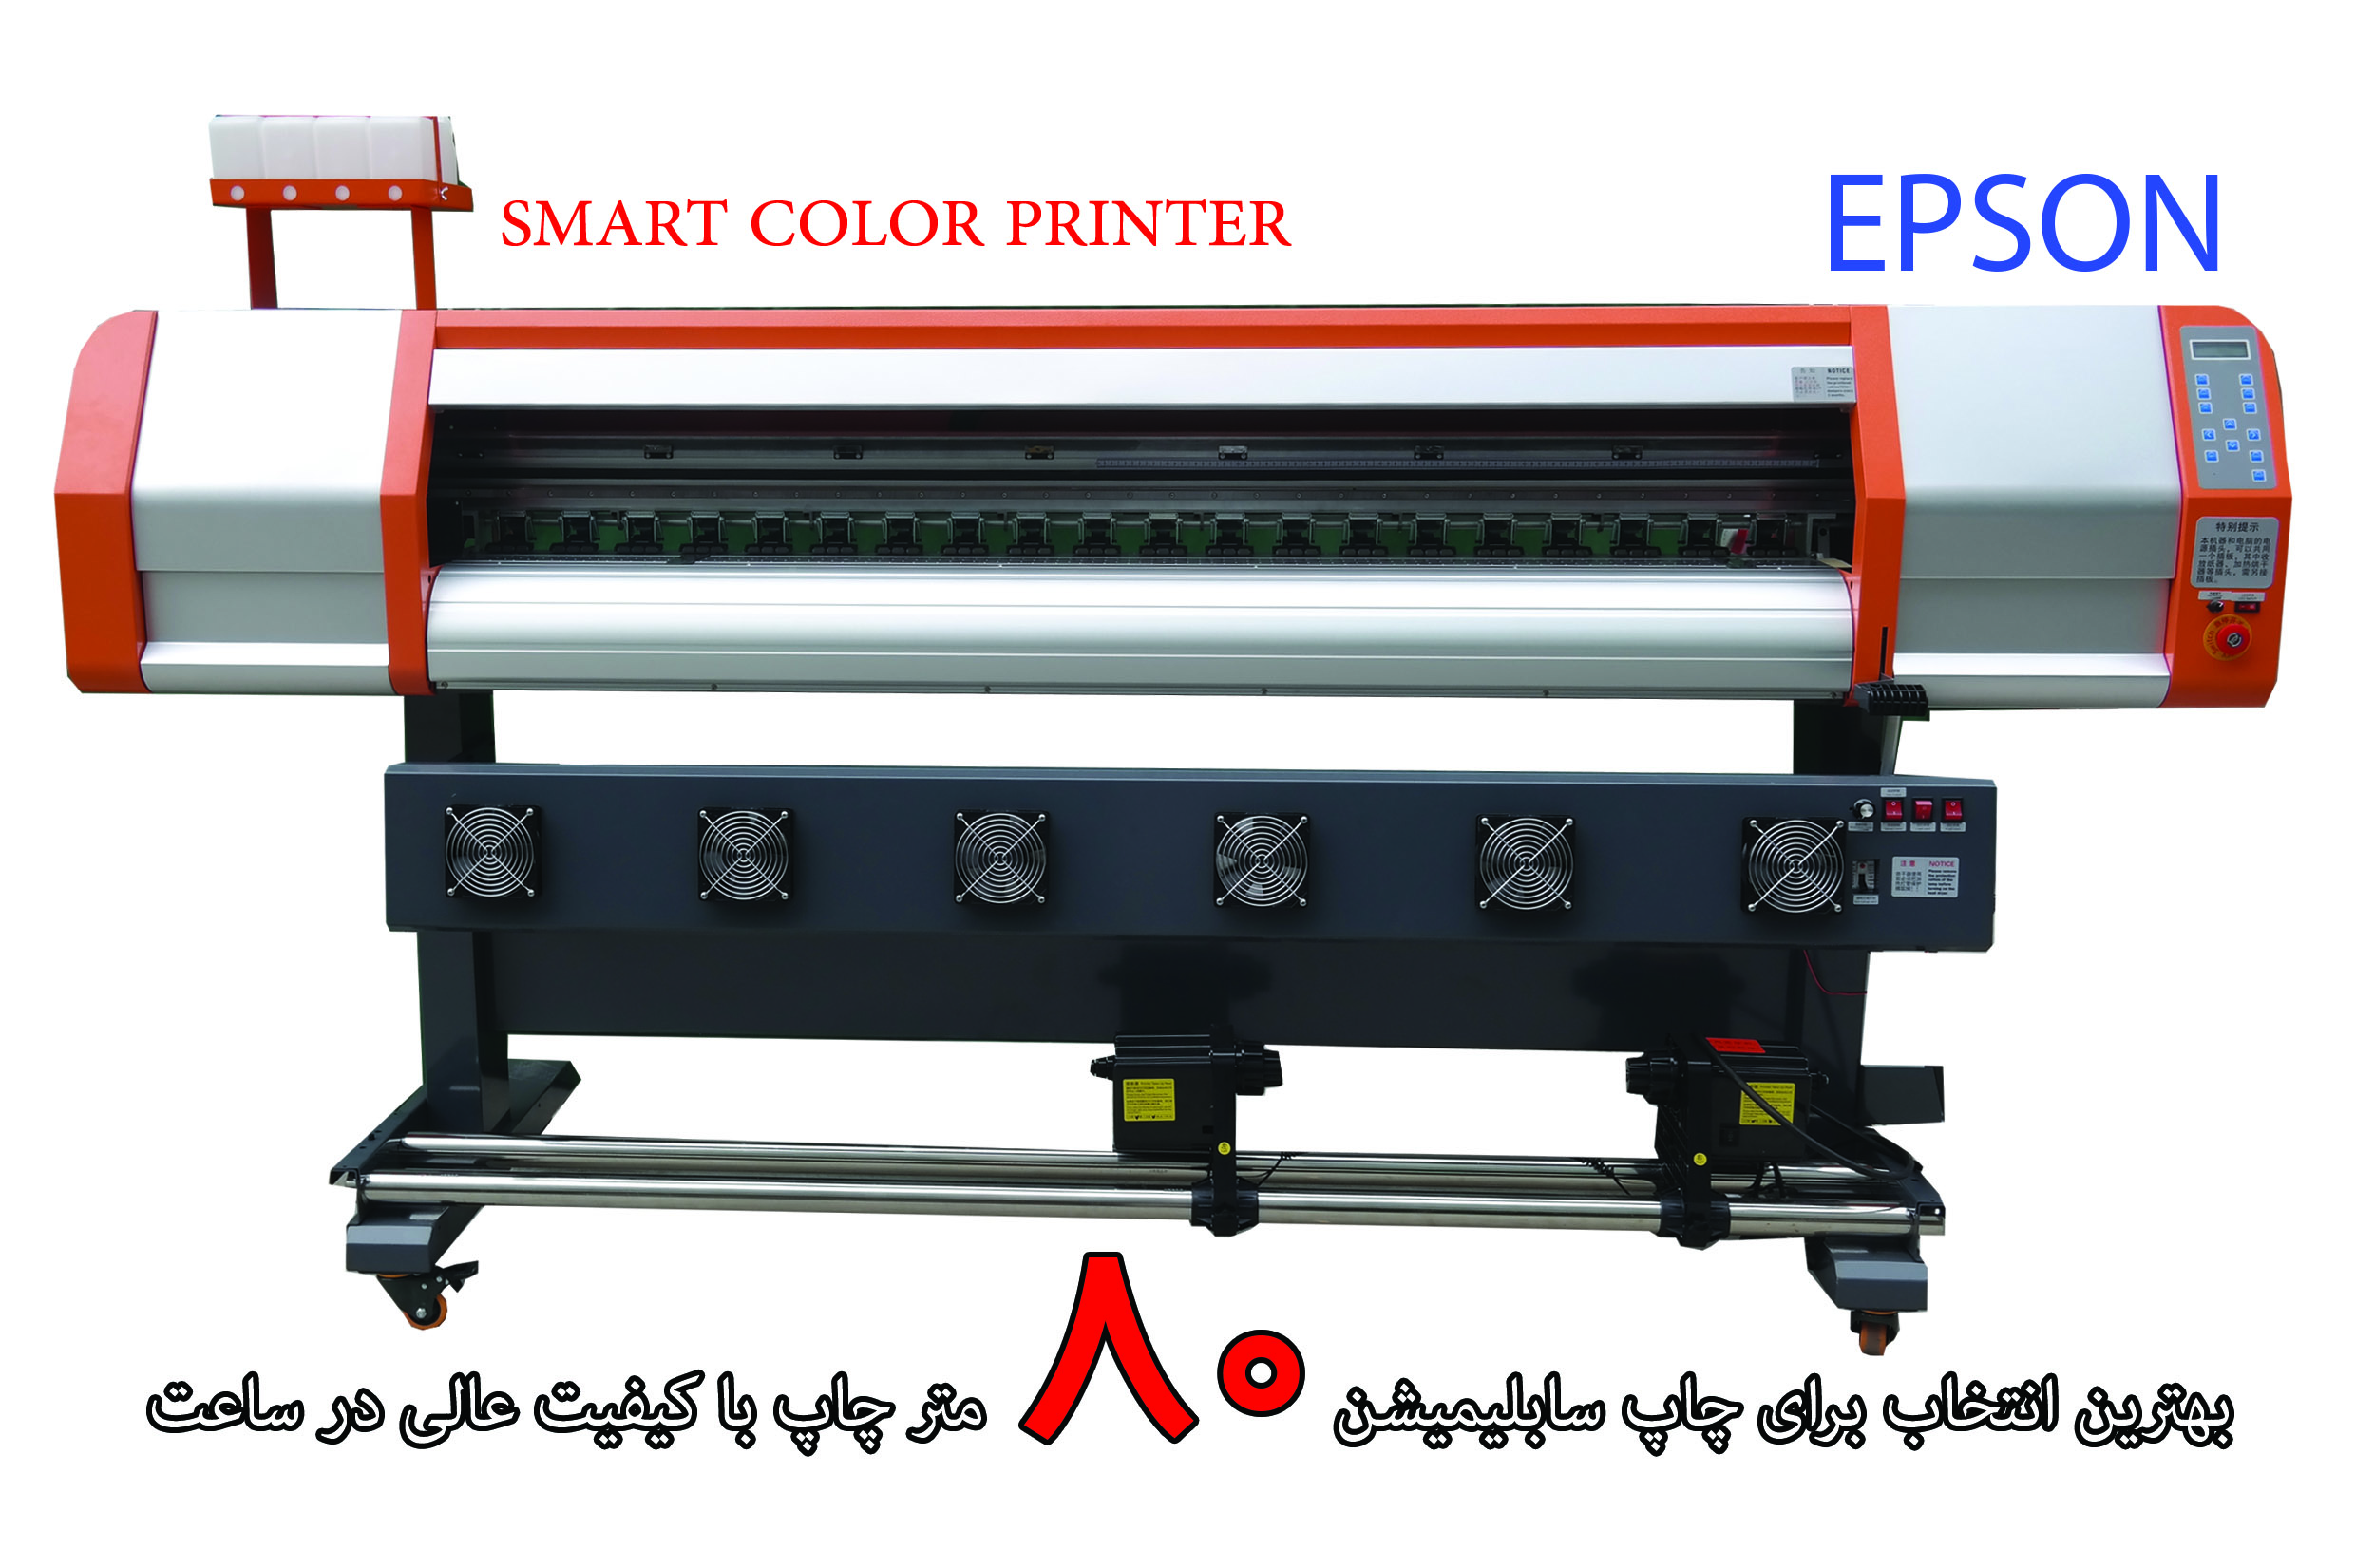 خصوصیات یک چاپگر صنعتی خوب چیست ؟